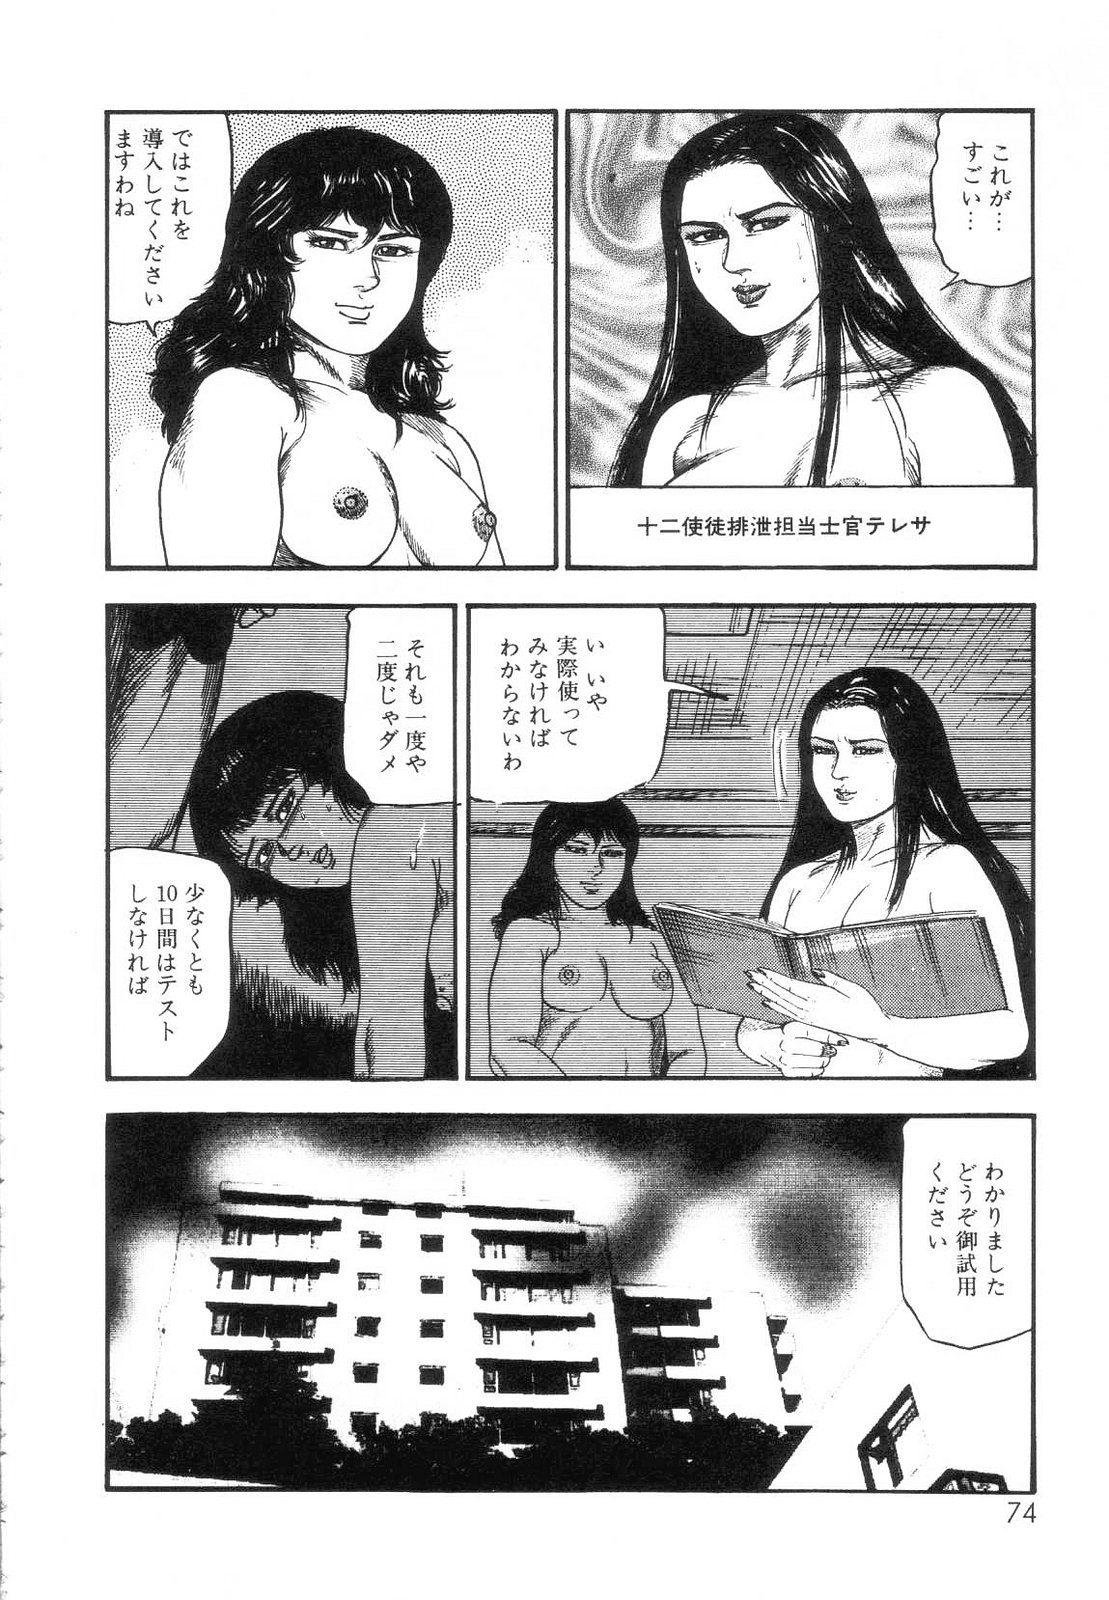 [Sanjou Tomomi] Shiro no Mokushiroku Vol. 7 - Shiiku Ningyou Erika no Shou 75